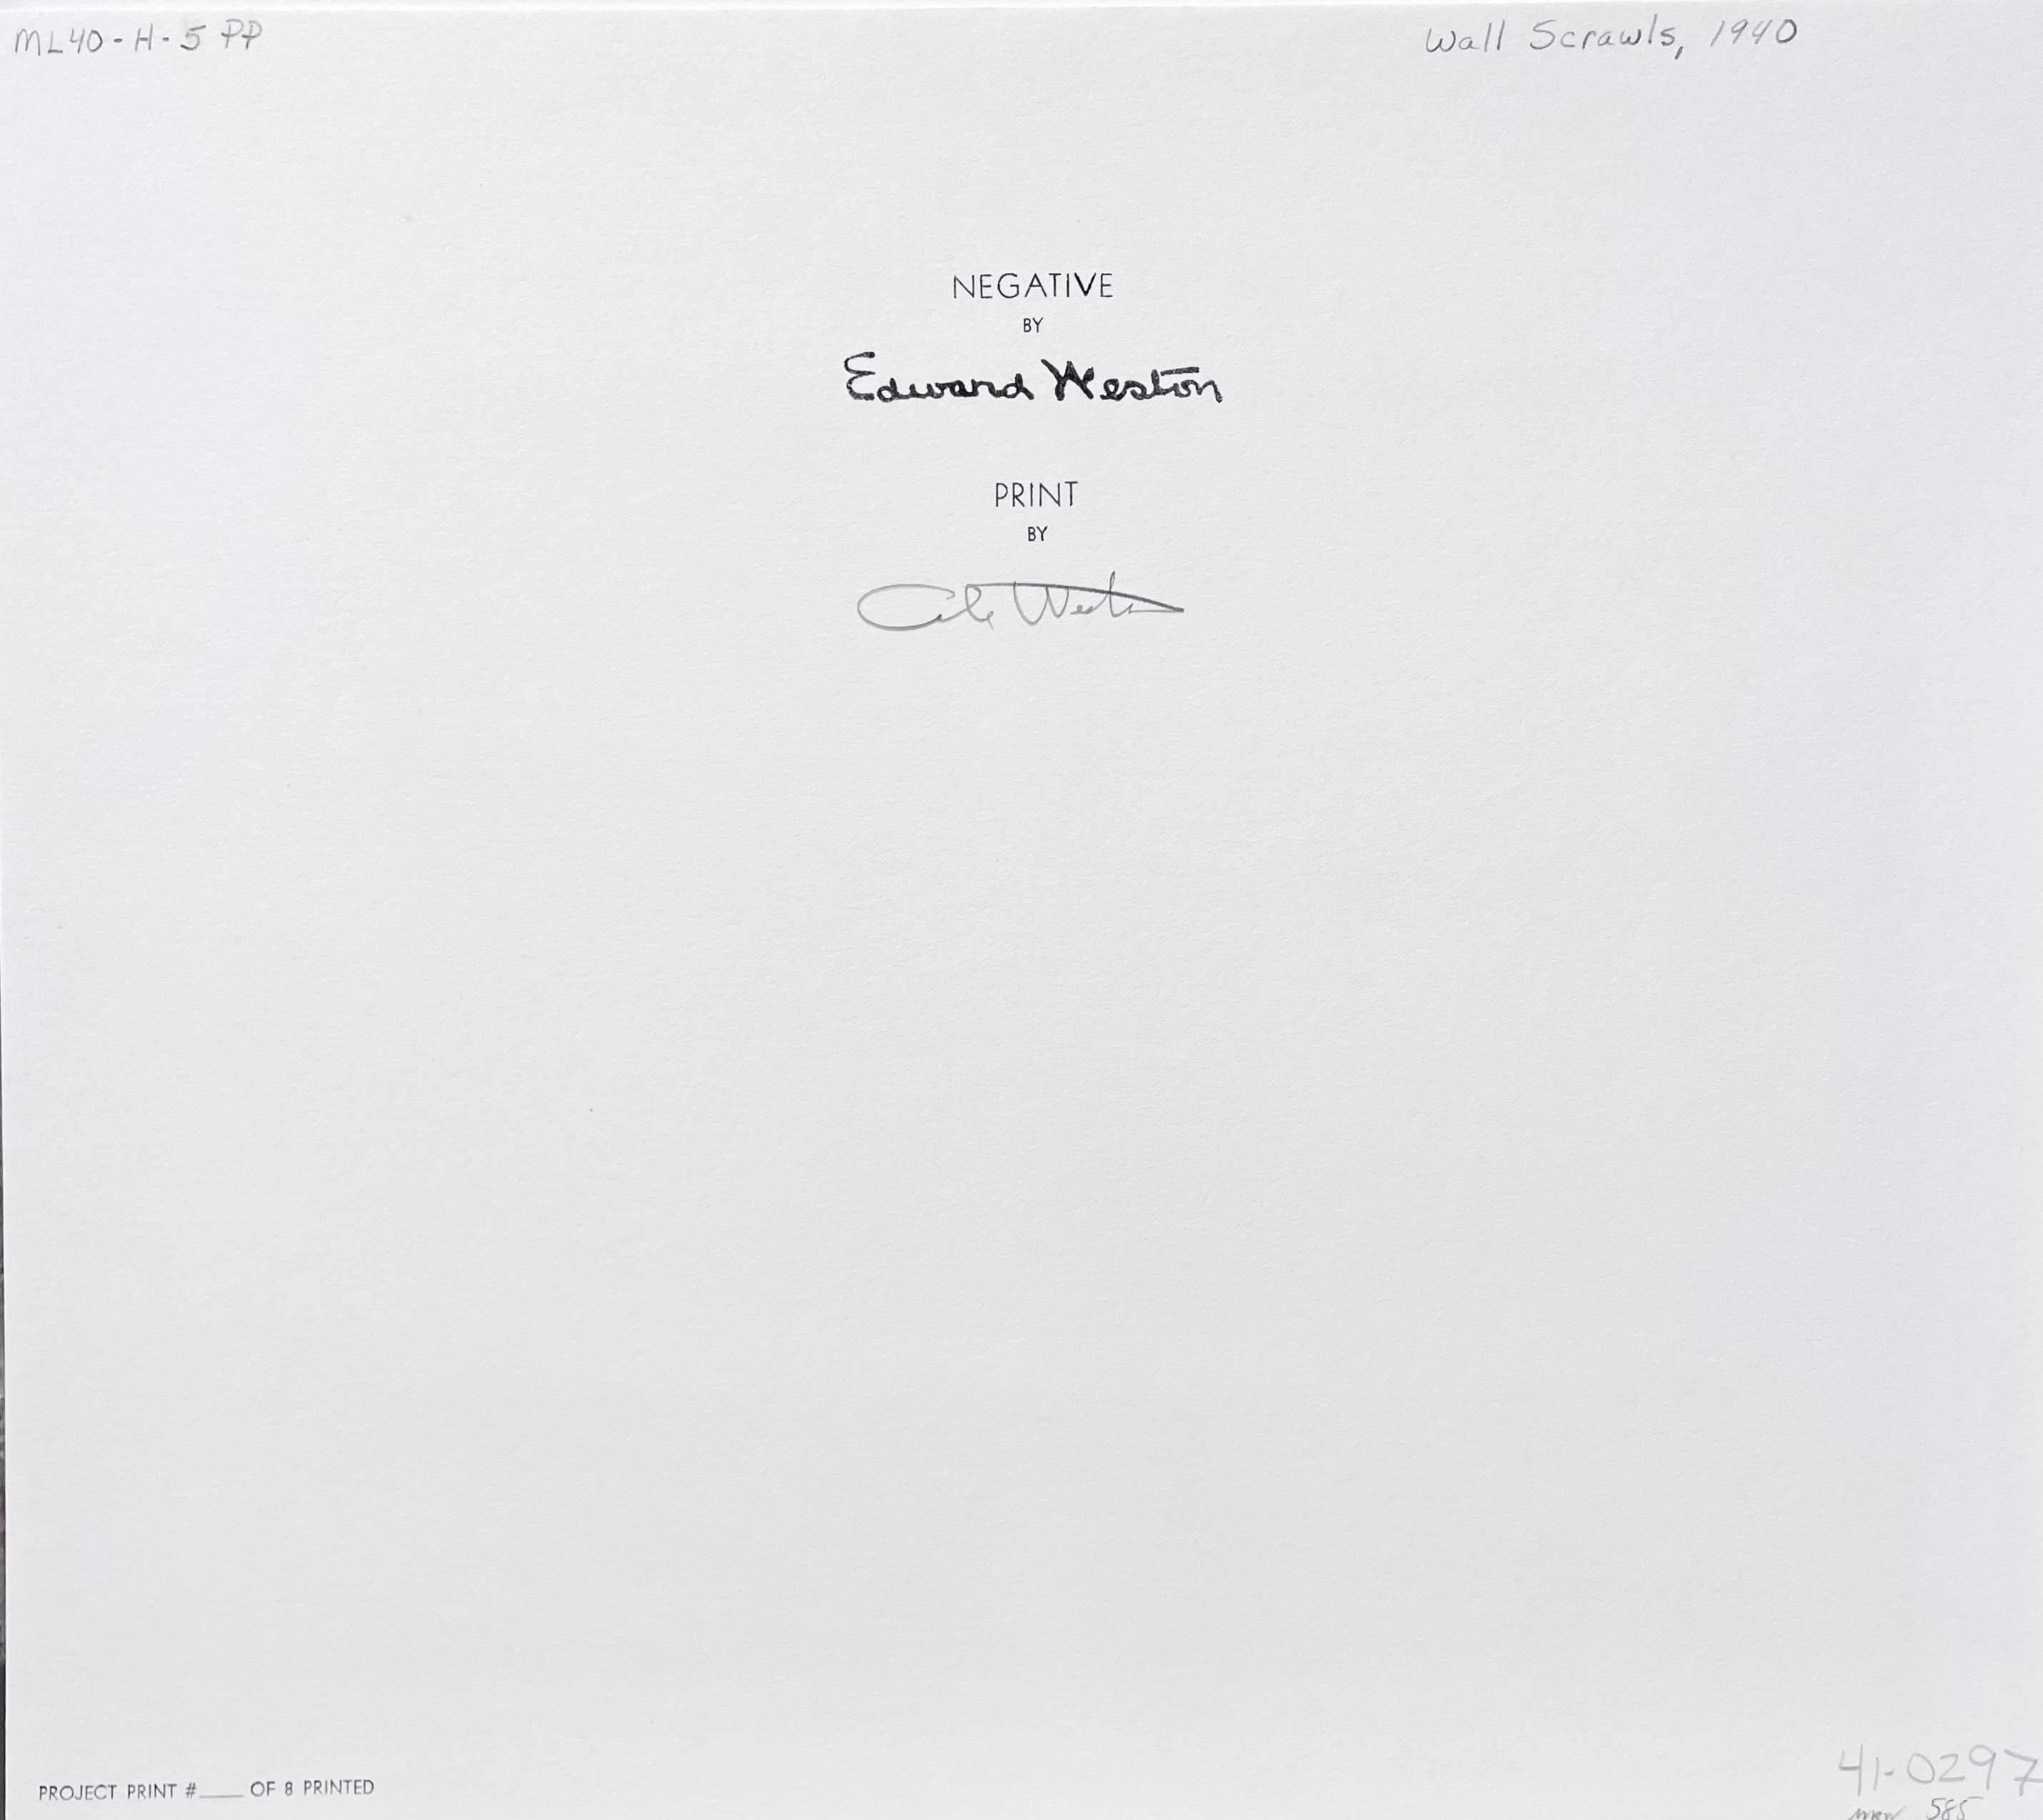 Edward Weston - Wall Scrawls, 1940 For Sale at 1stDibs | edward weston ...